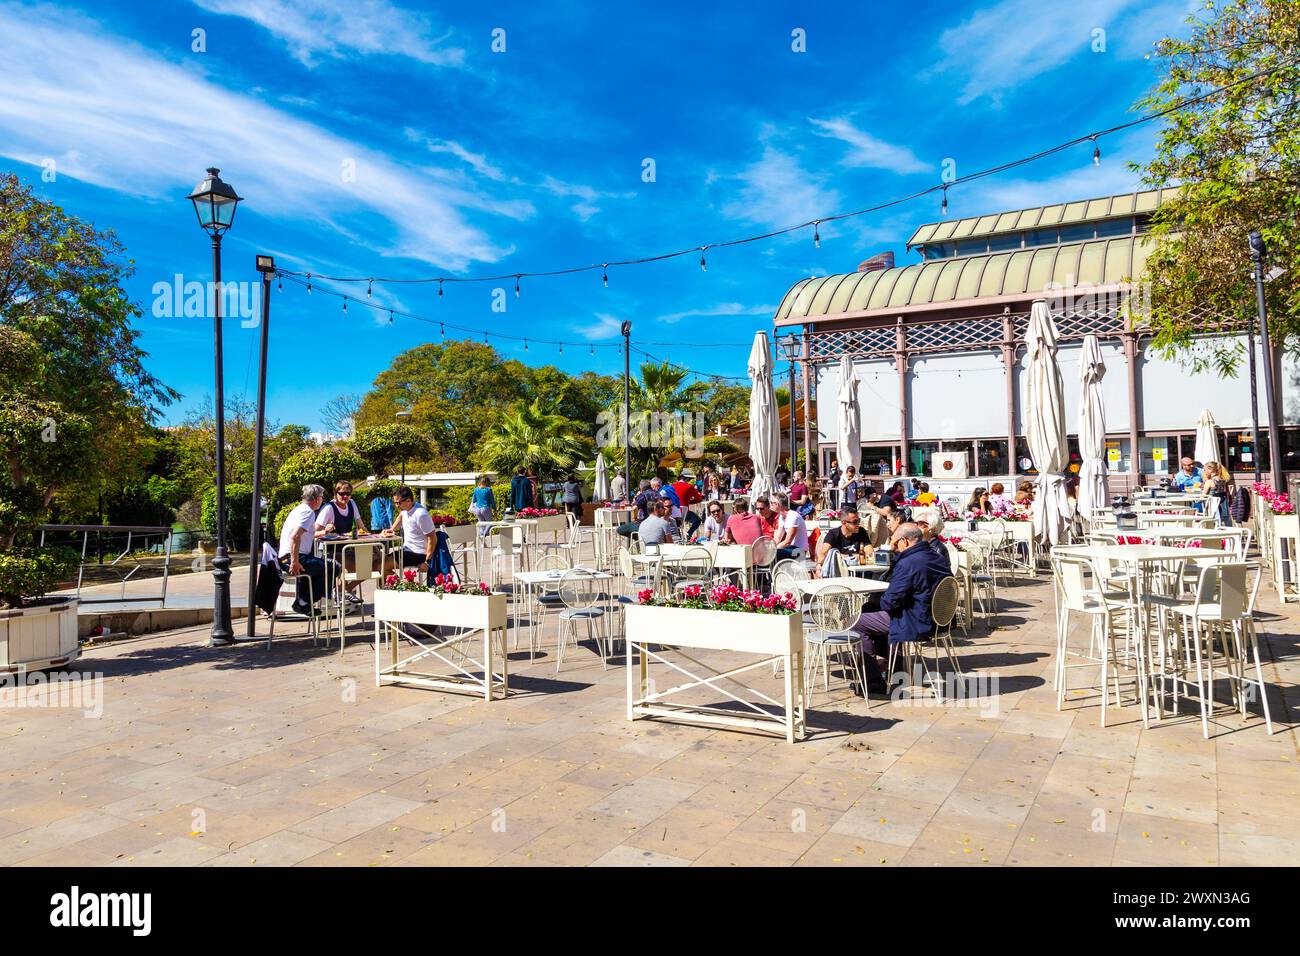 Gäste speisen im Freien außerhalb des Mercado Lonja del Barranco, einem Gourmet-Markt auf einem ehemaligen Fischmarkt aus dem 19. Jahrhundert, Sevilla, Andalusien, Spanien Stockfoto